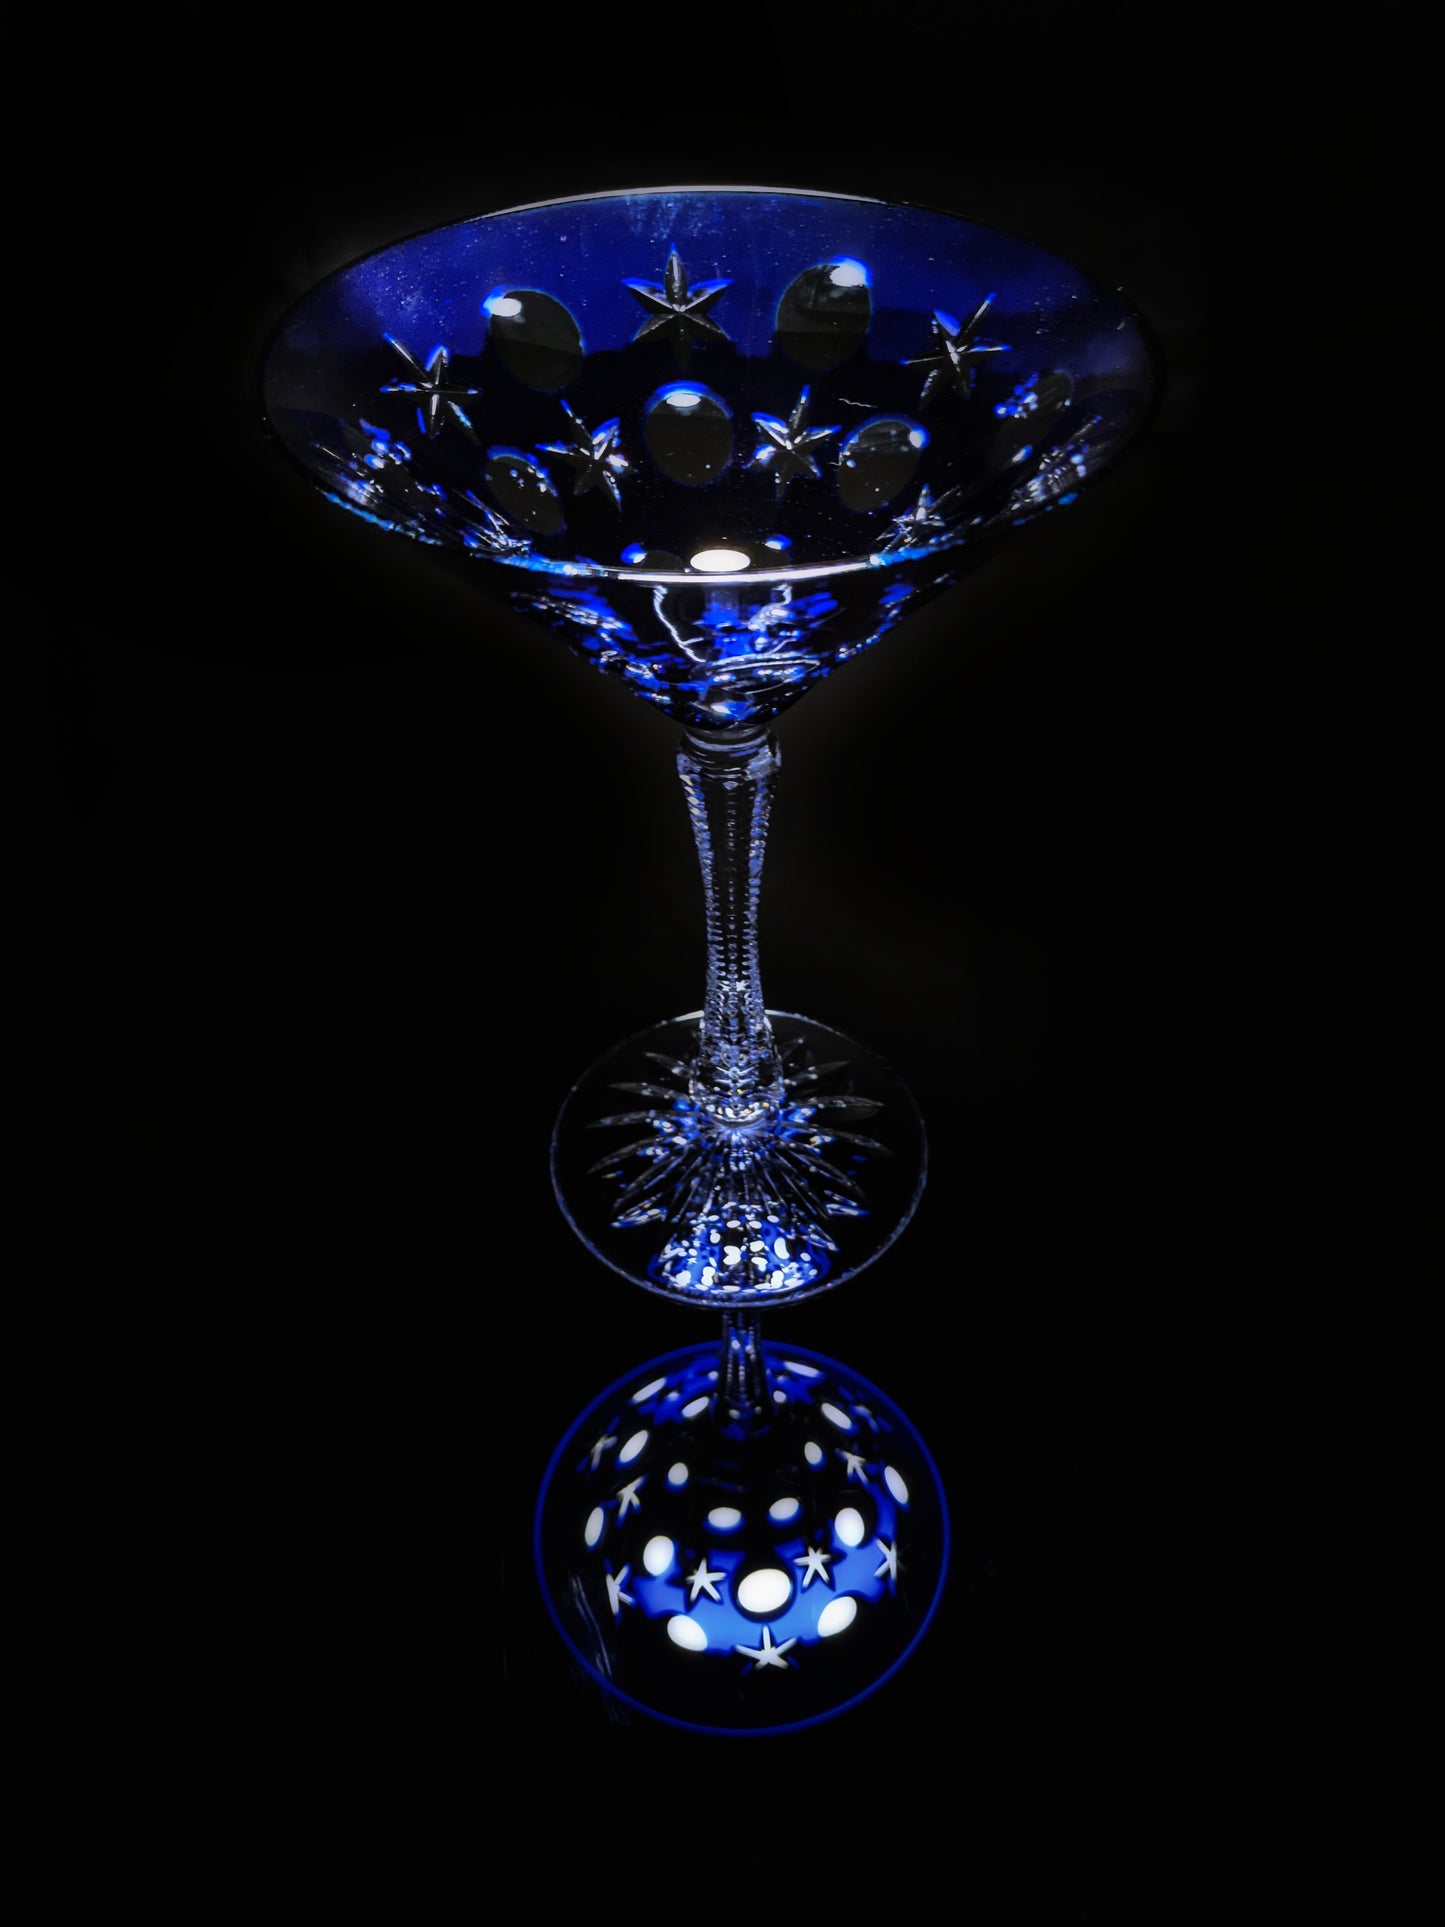 Faberge  Na Zdorovye Cobalt Blue Crystal Martini Glass